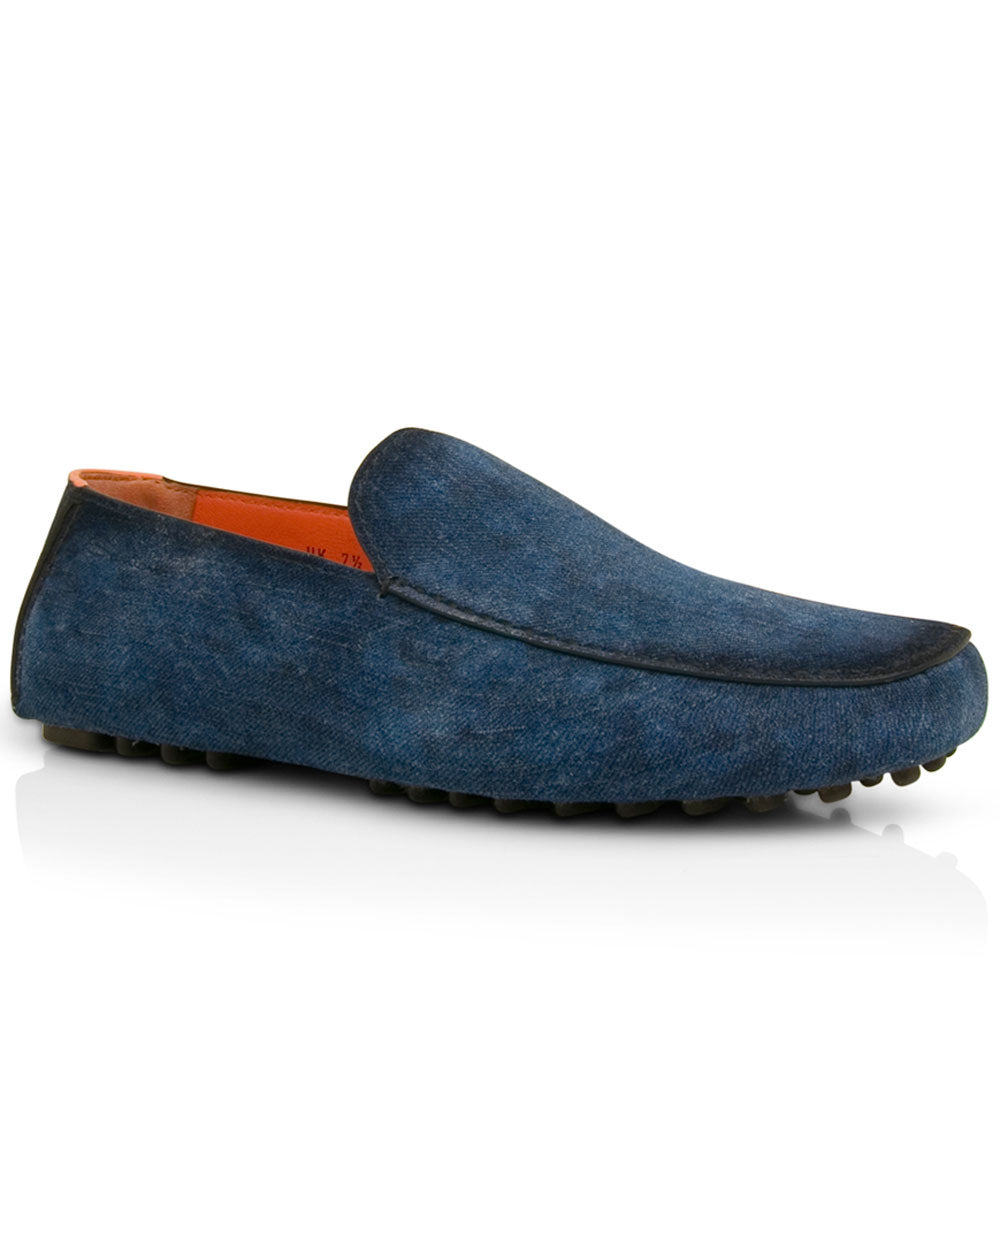 Dowser Loafer in Jet Blue